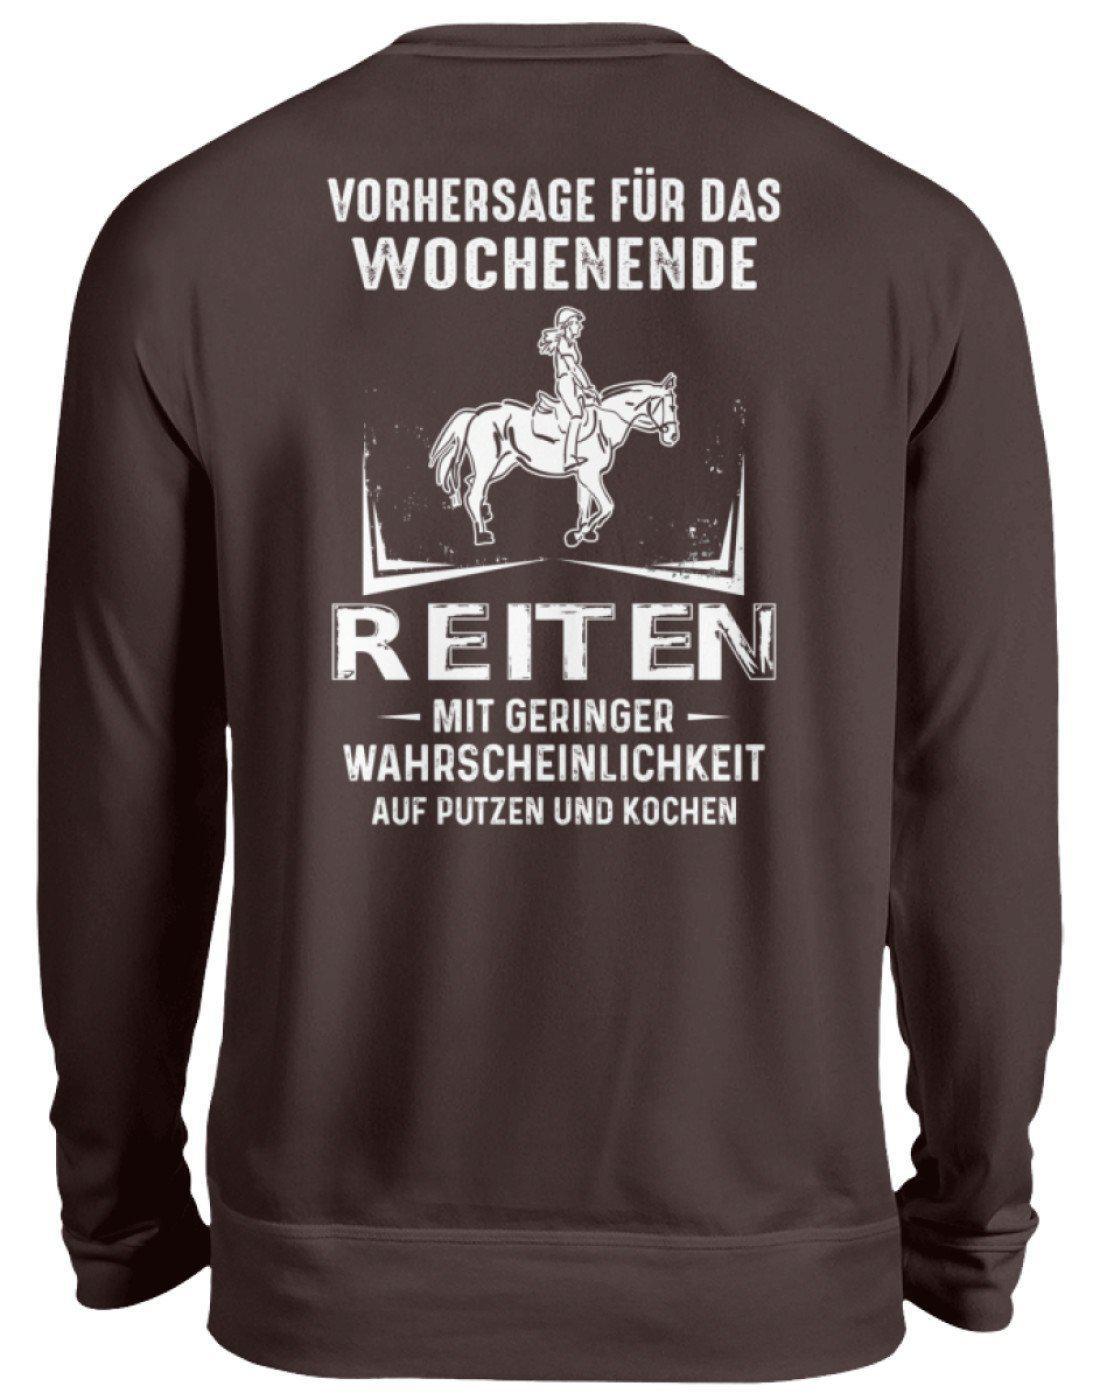 Reiten Vorhersage (Rückenprint) · Unisex Sweatshirt Pullover-Unisex Sweatshirt-Hot Chocolate-S-Agrarstarz